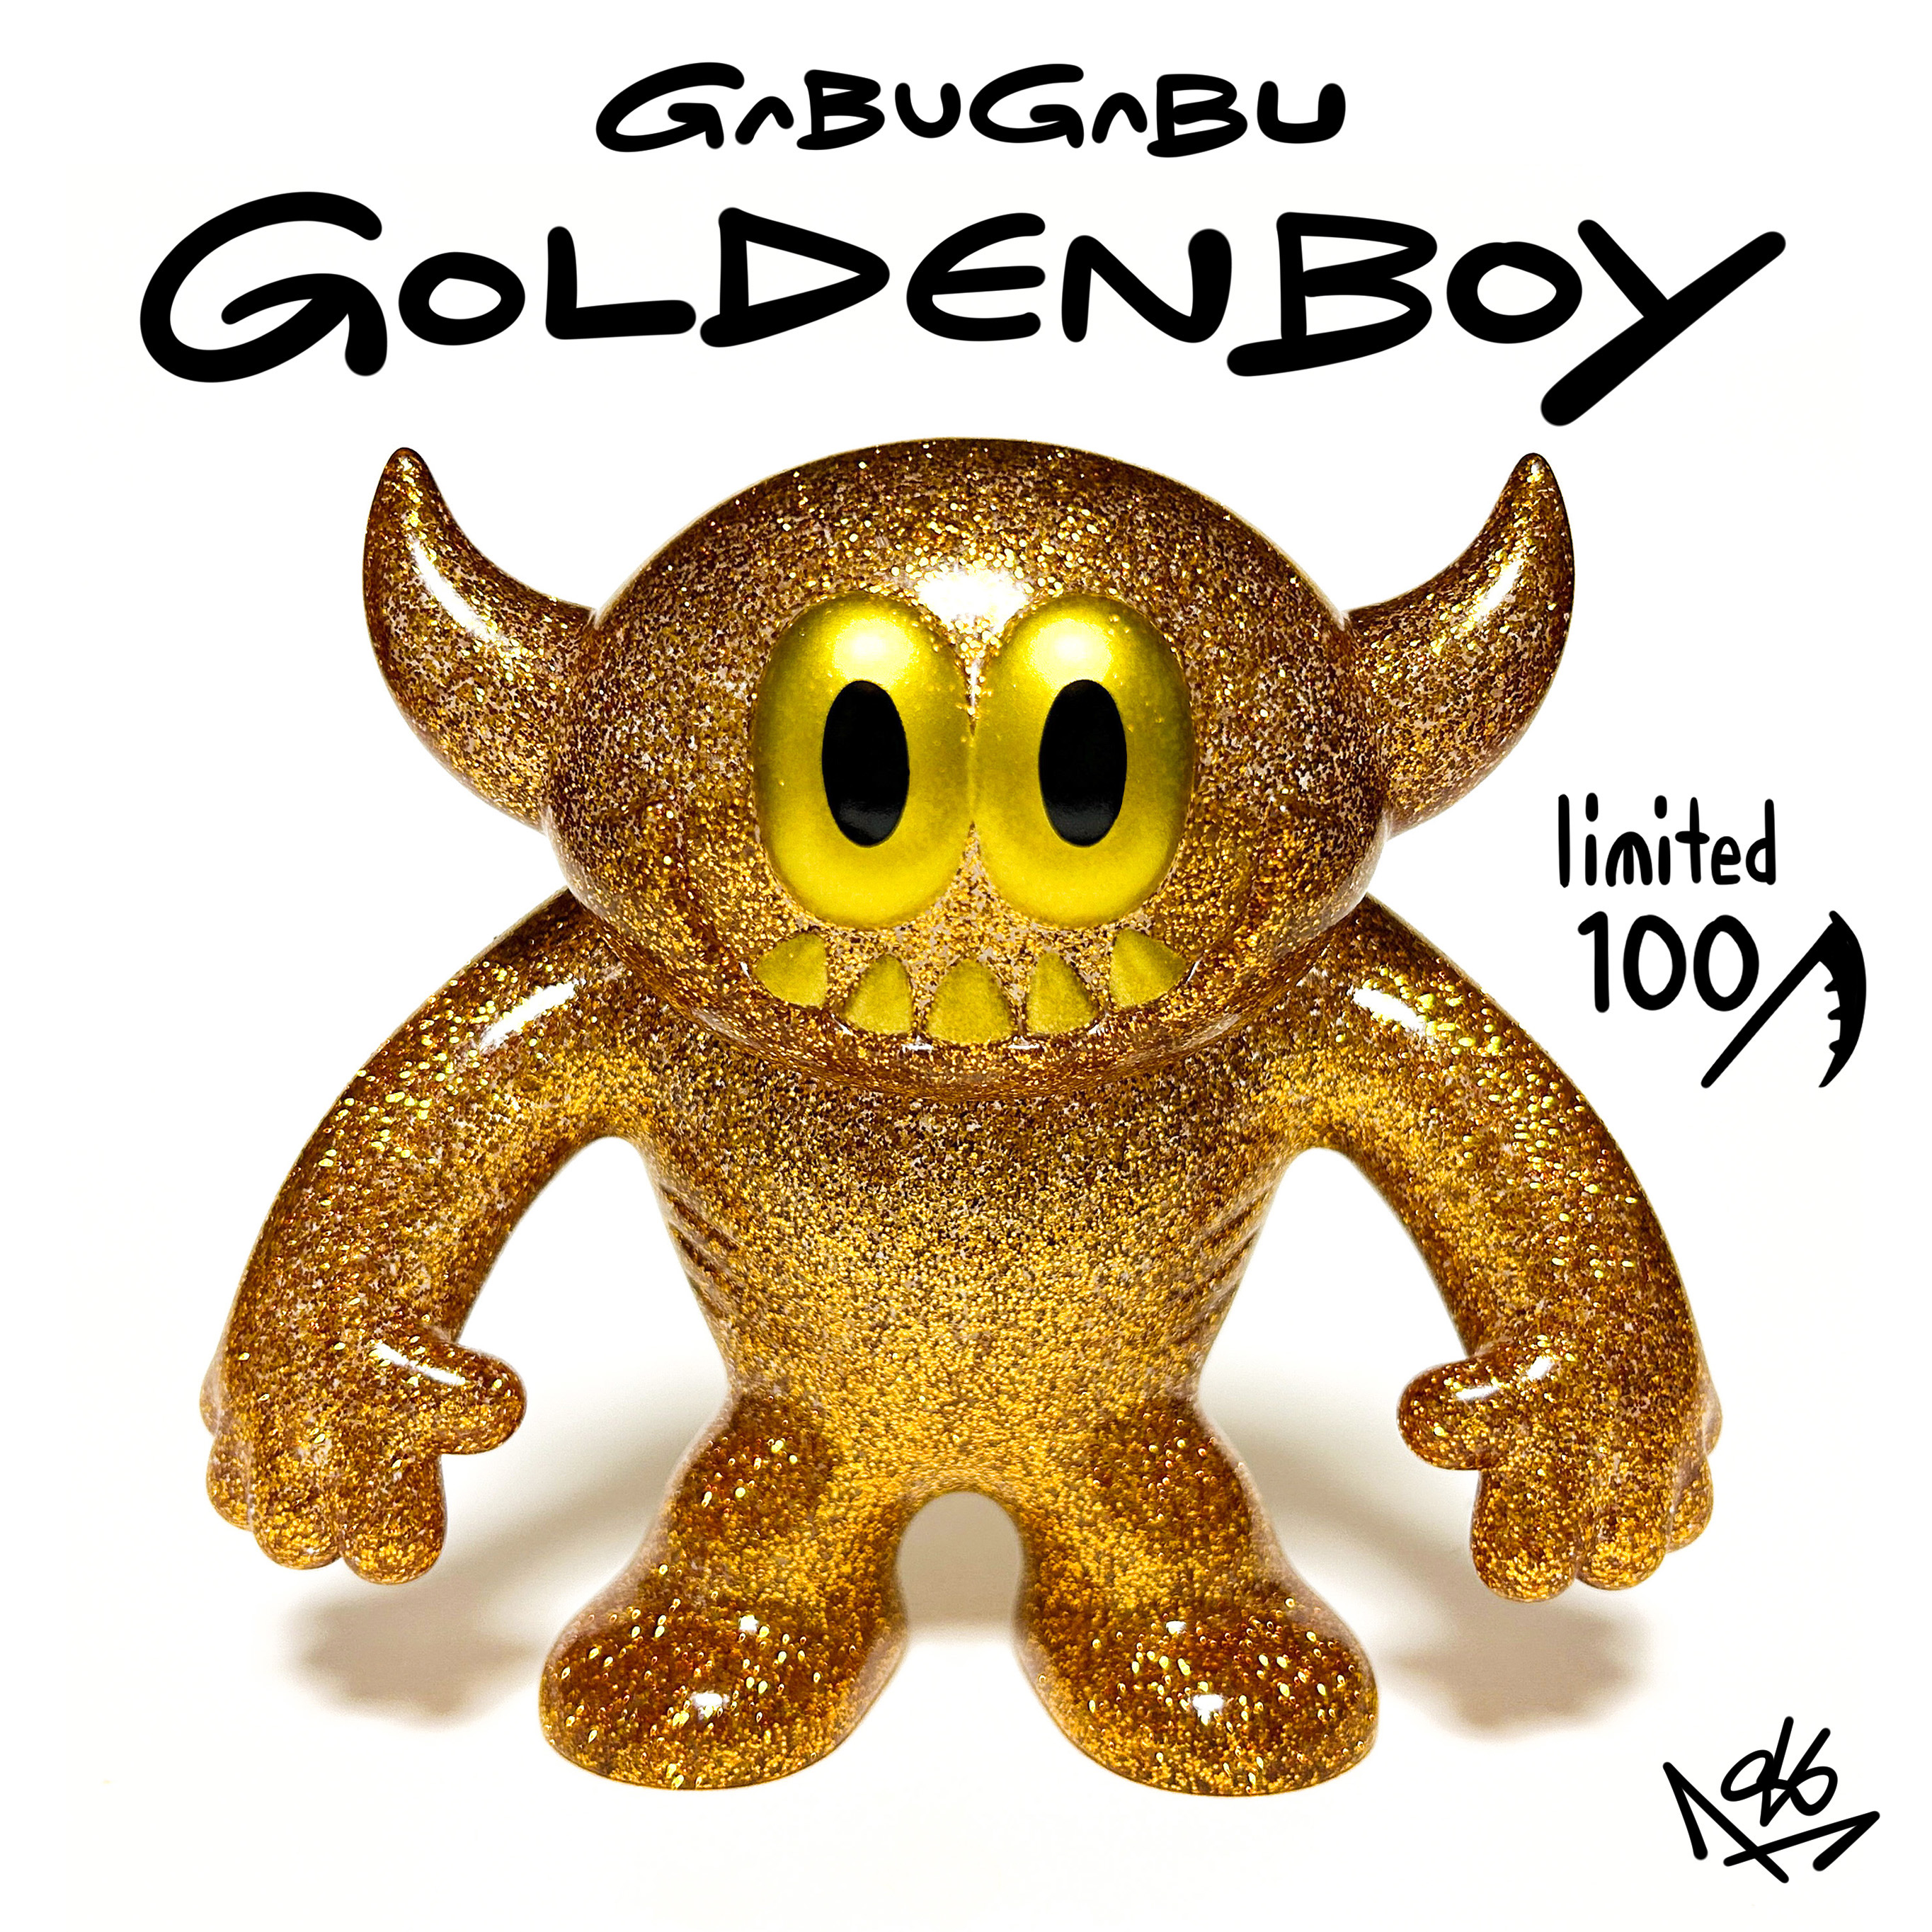 GABUGABU[golden boy]抽選販売のご案内